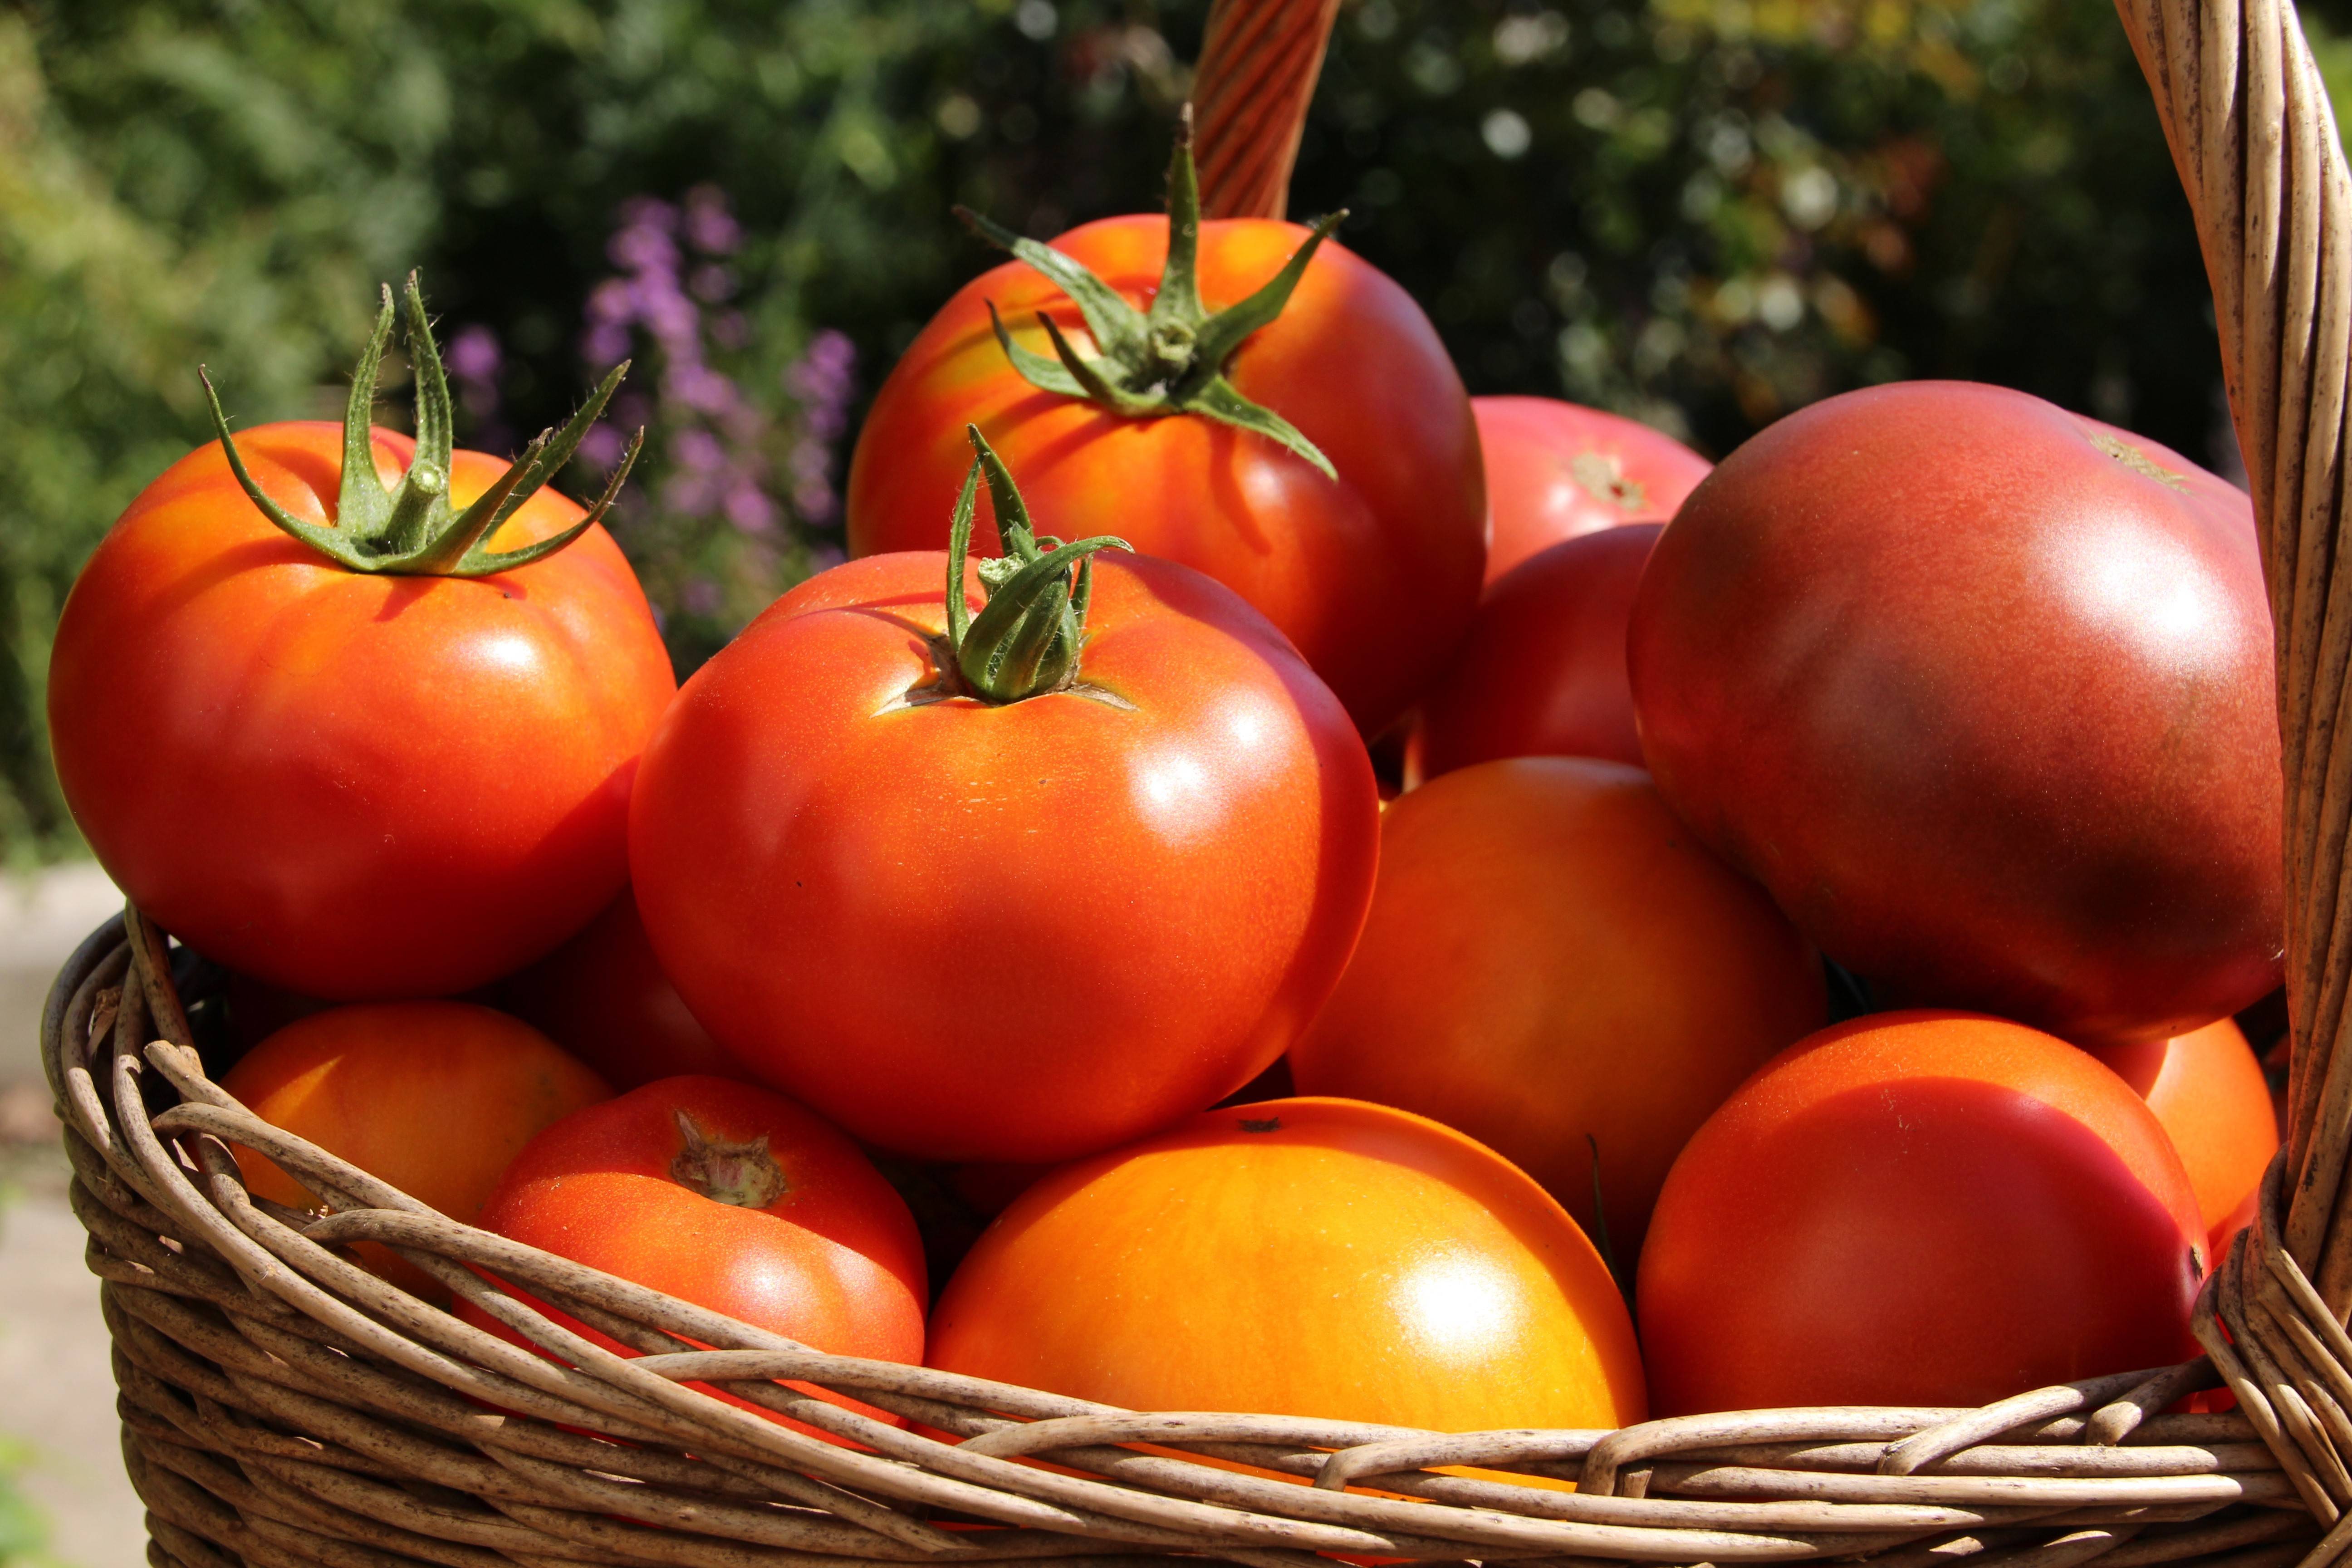 Лучшие сорта томатов на 2019 год: фото, отзывы, описание для теплиц, открытого грунта